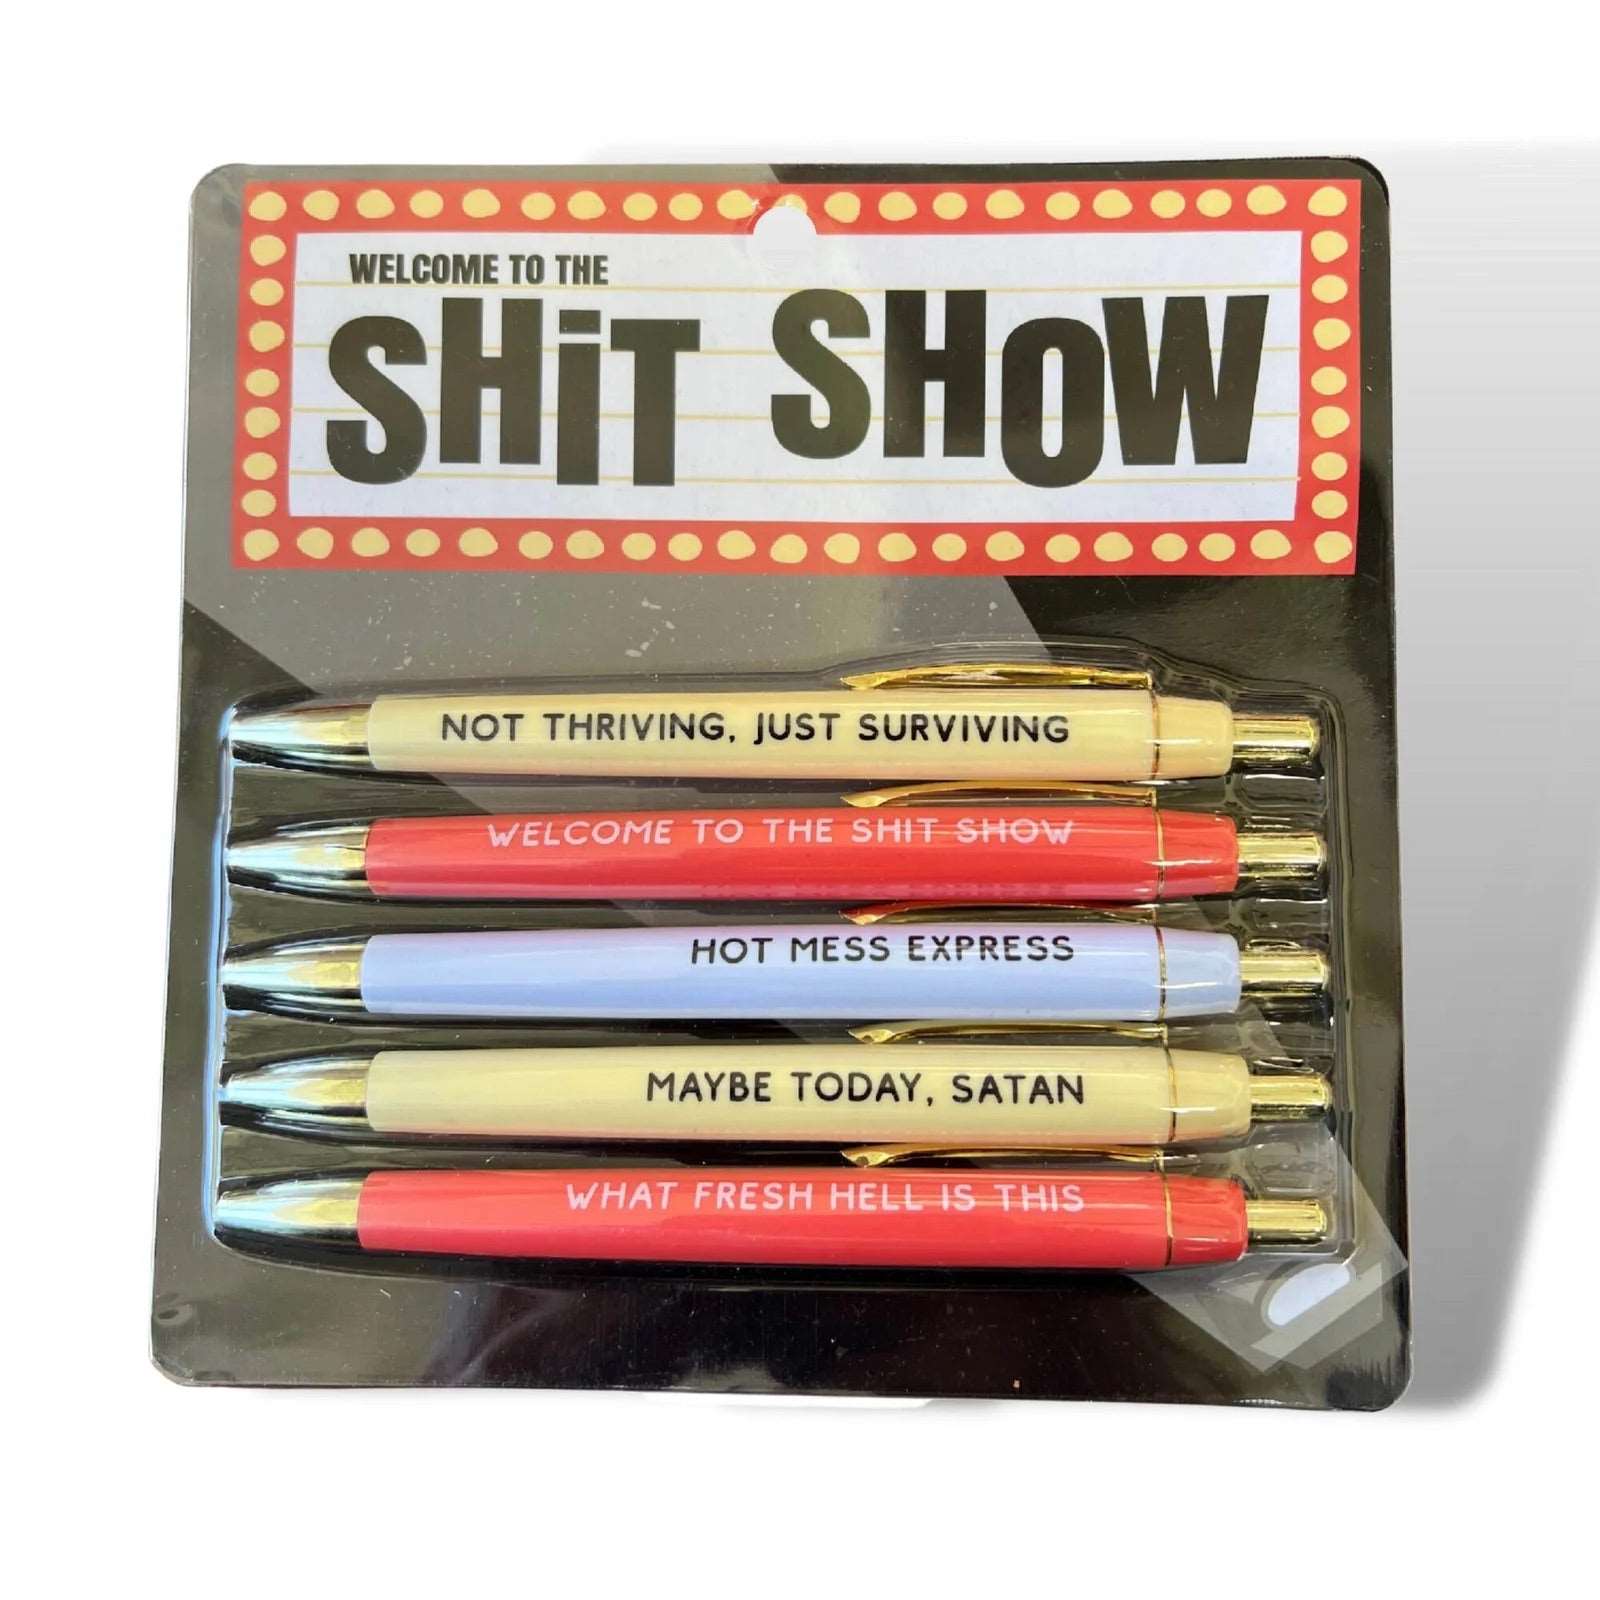 Shit Show Pen Set